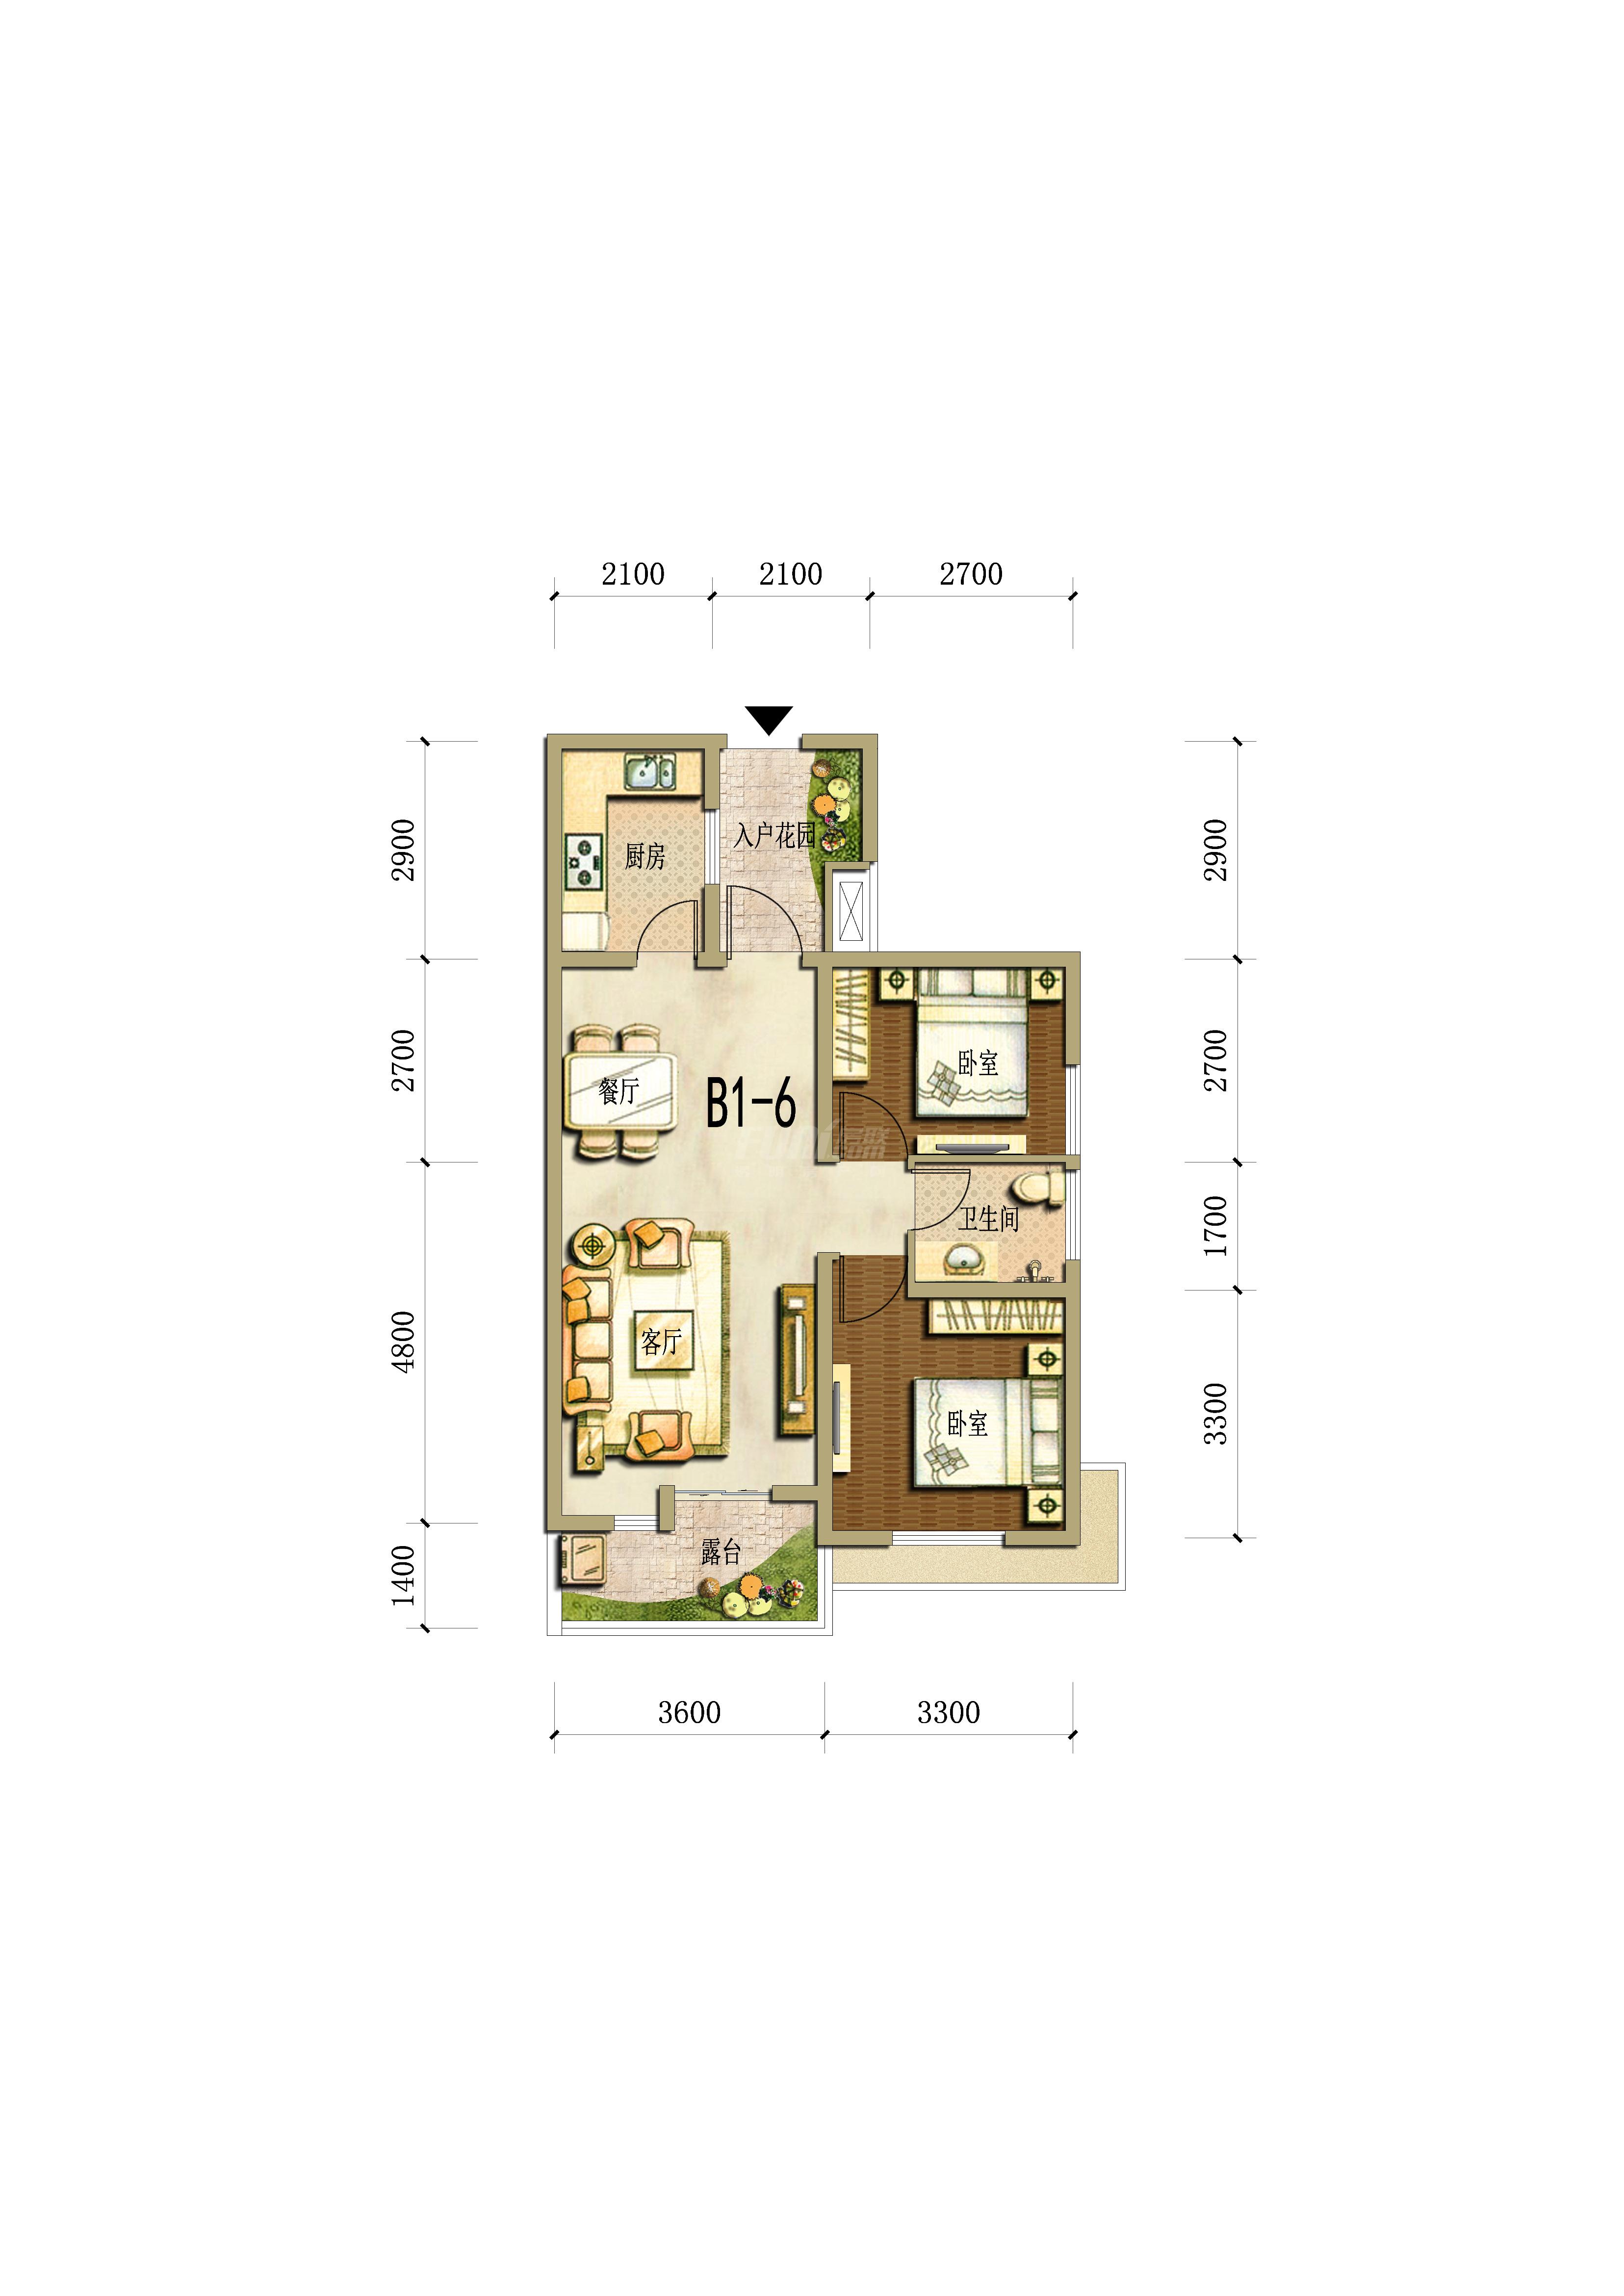 海德花园1号楼b1-6户型图,2室2厅1卫72.00平米- 成都